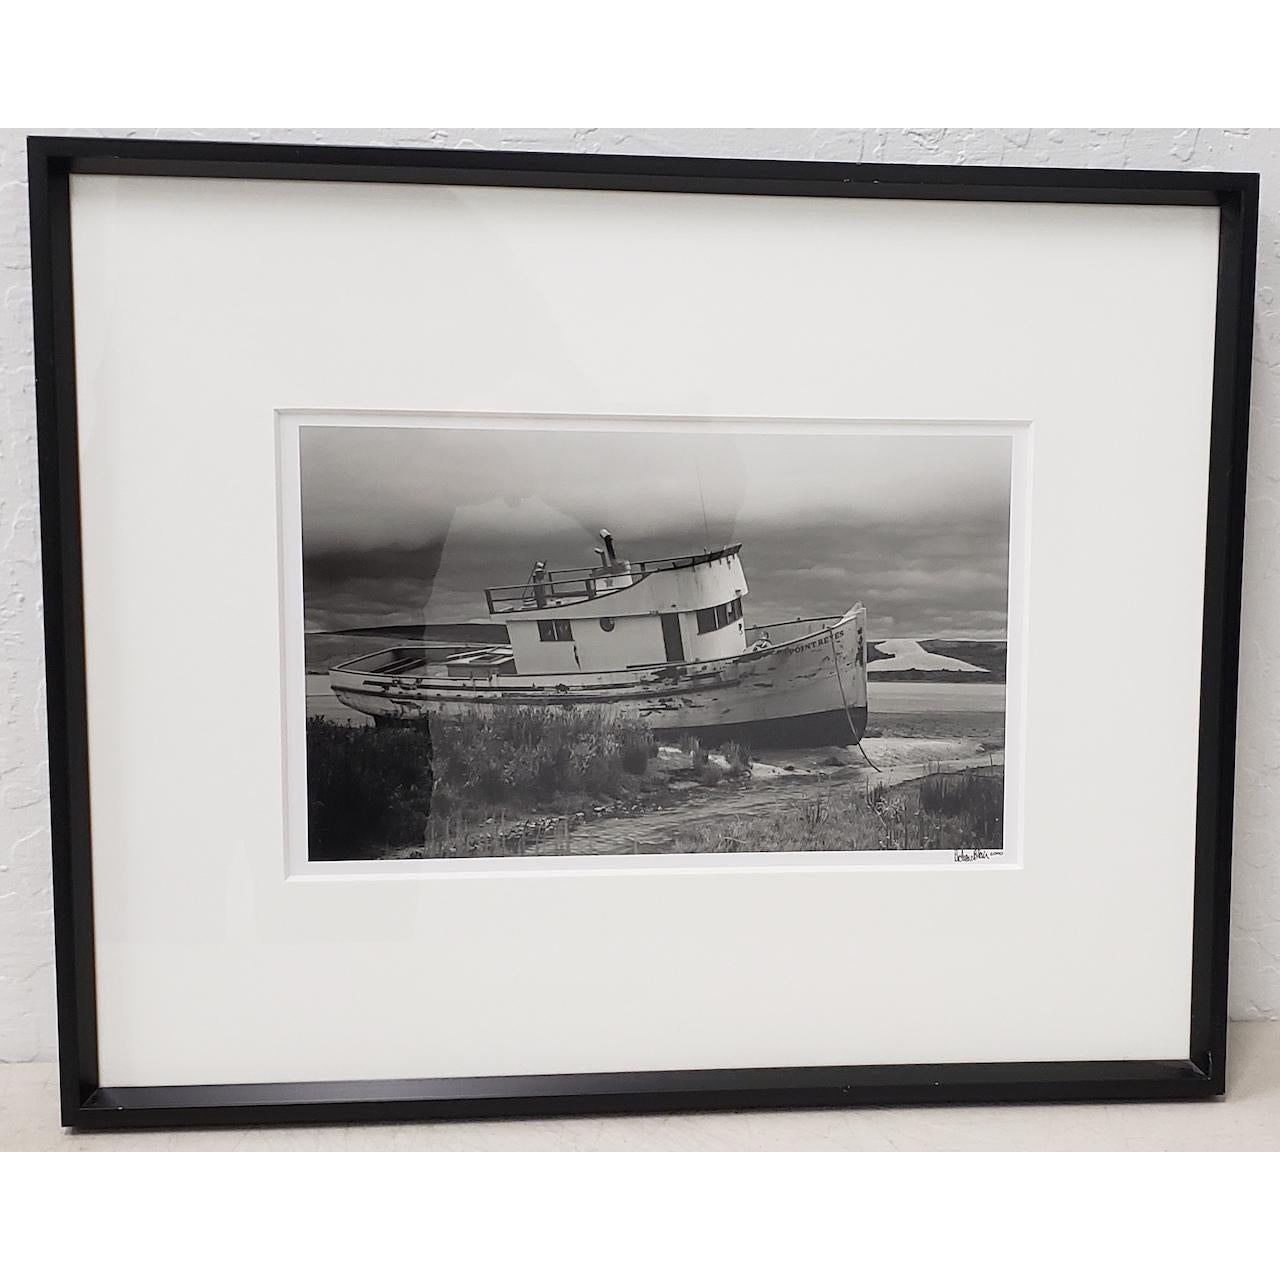 Richard Blair Photograph "Shipwrecked Boat - Tomales Bay" c.2000